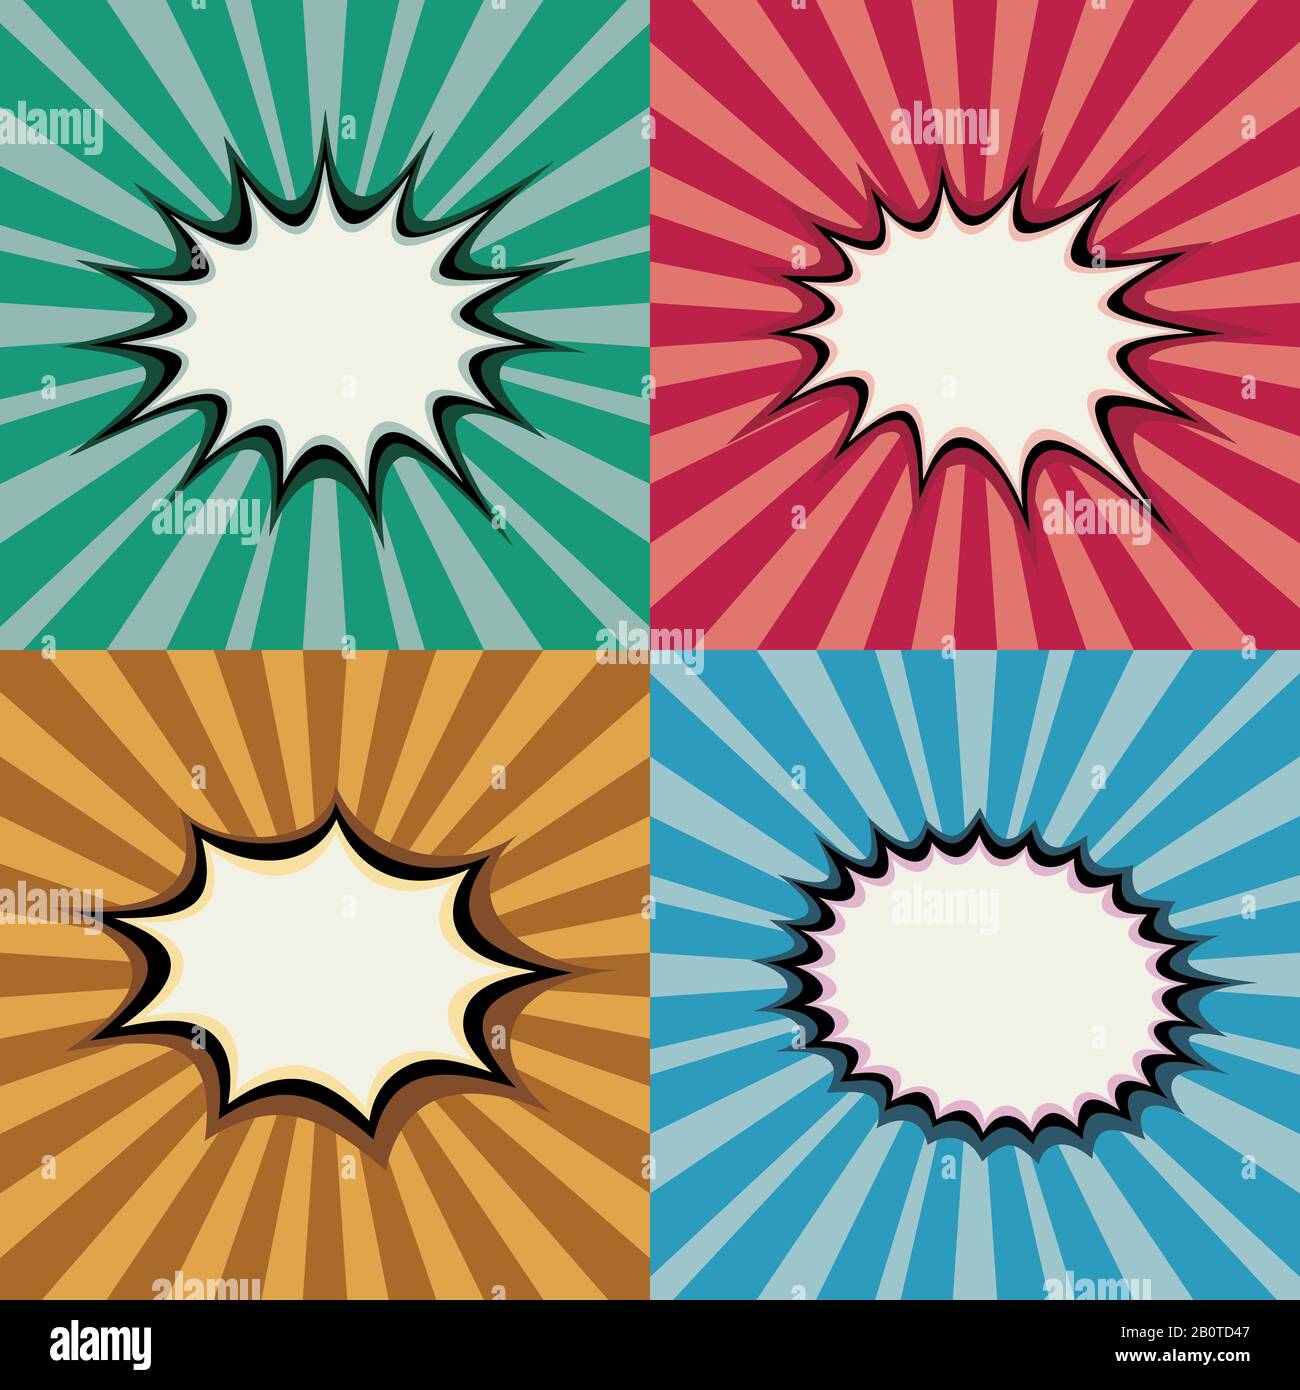 Leere Pop-Art-Sprechblasen und geplatzte Formen auf dem Hintergrundvektor des Superhelden-Sonnenuntergangs im Retro. Hintergrund Knall Burst, Abbildung der Seite mit radialem Burst Stock Vektor